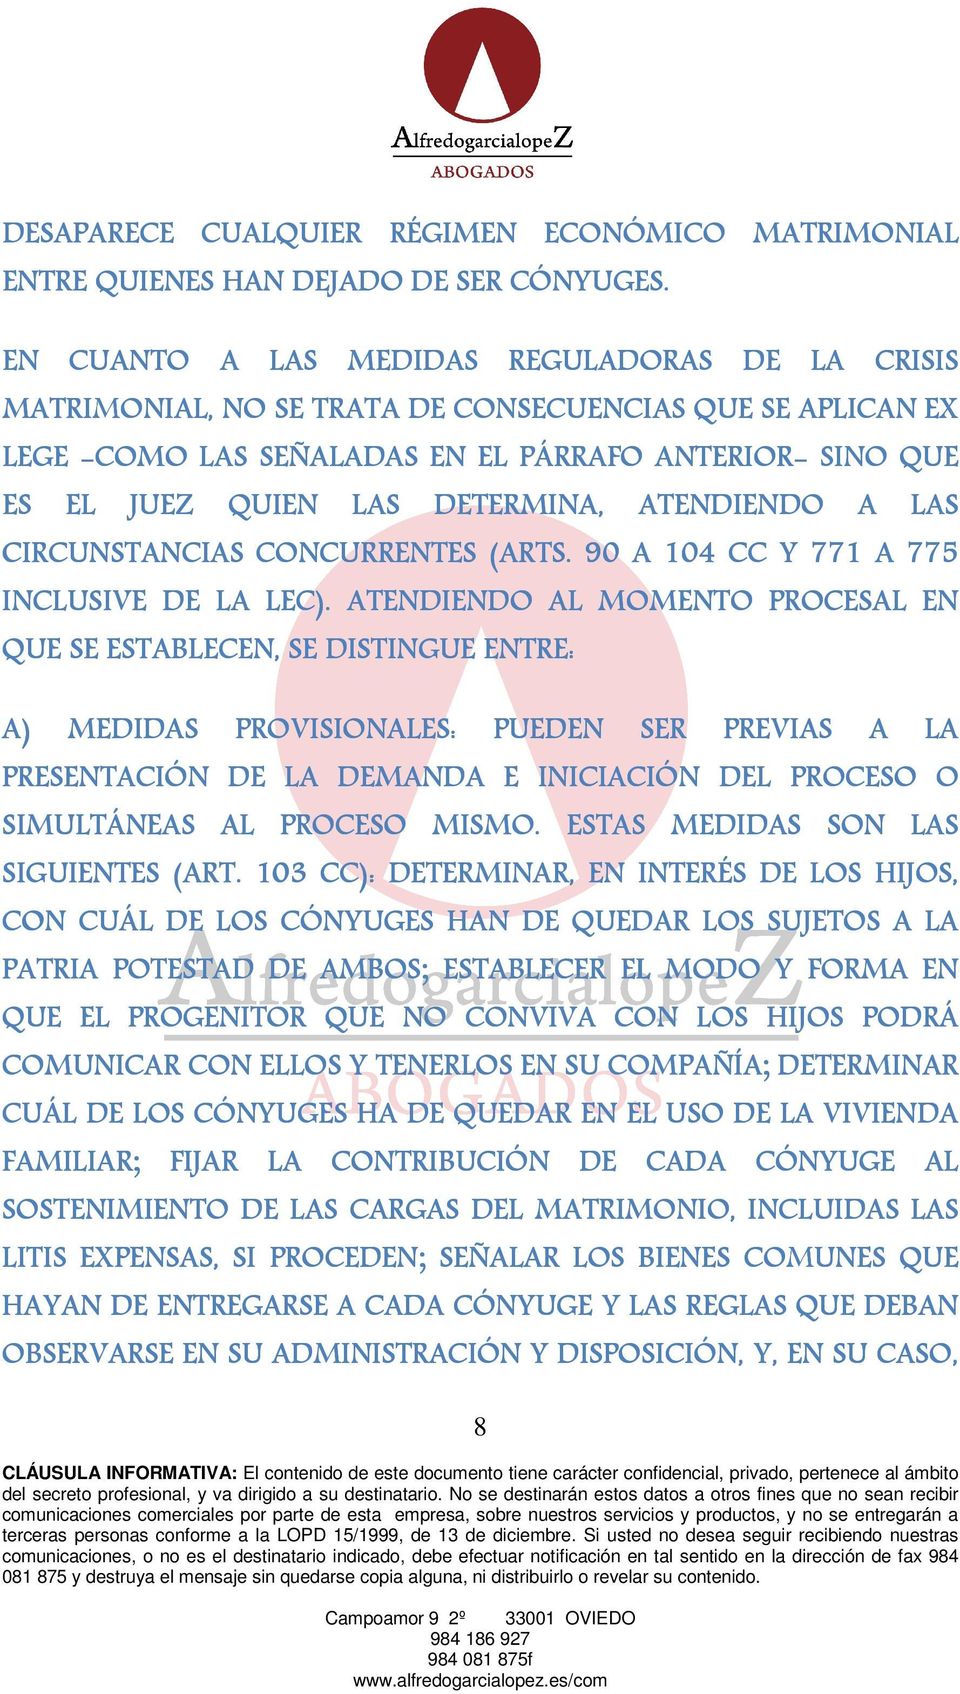 ATENDIENDO A LAS CIRCUNSTANCIAS CONCURRENTES (ARTS. 90 A 104 CC Y 771 A 775 INCLUSIVE DE LA LEC).